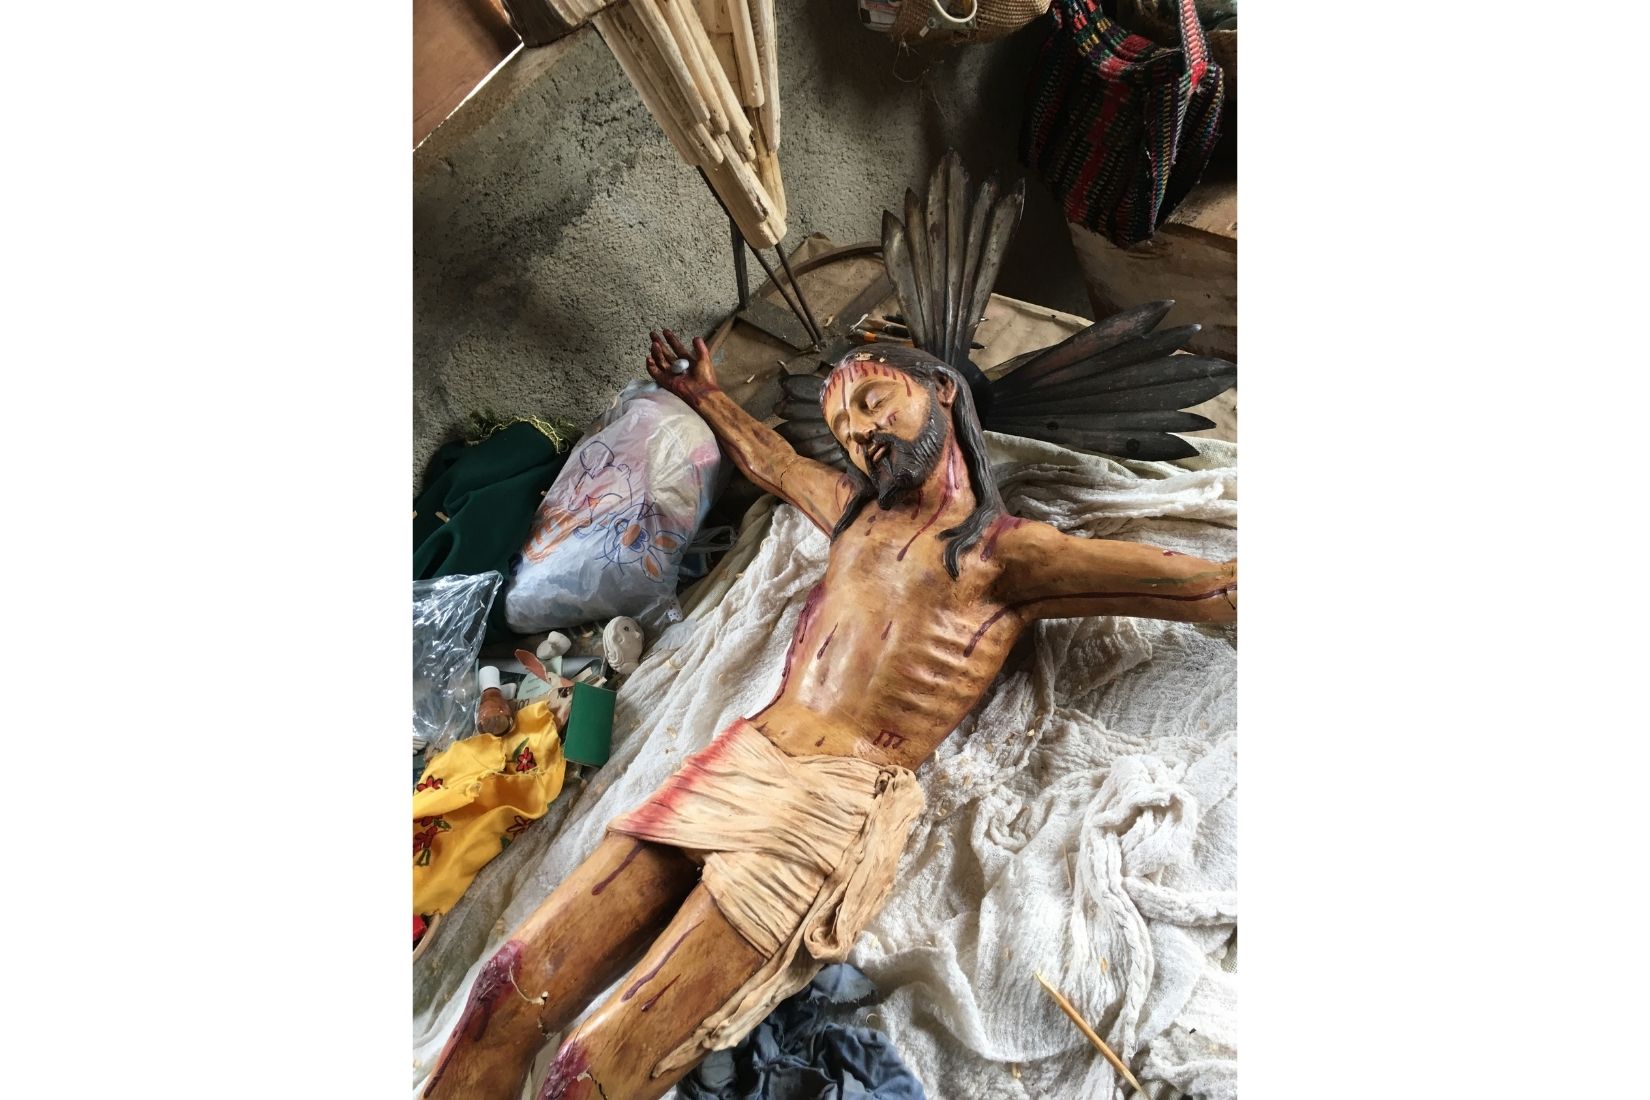 Proceso de elaboración de Cristo de pasta de caña. Artesano desconocido. Tzintzuntzan, Mich. (Foto: Sonya Santos).